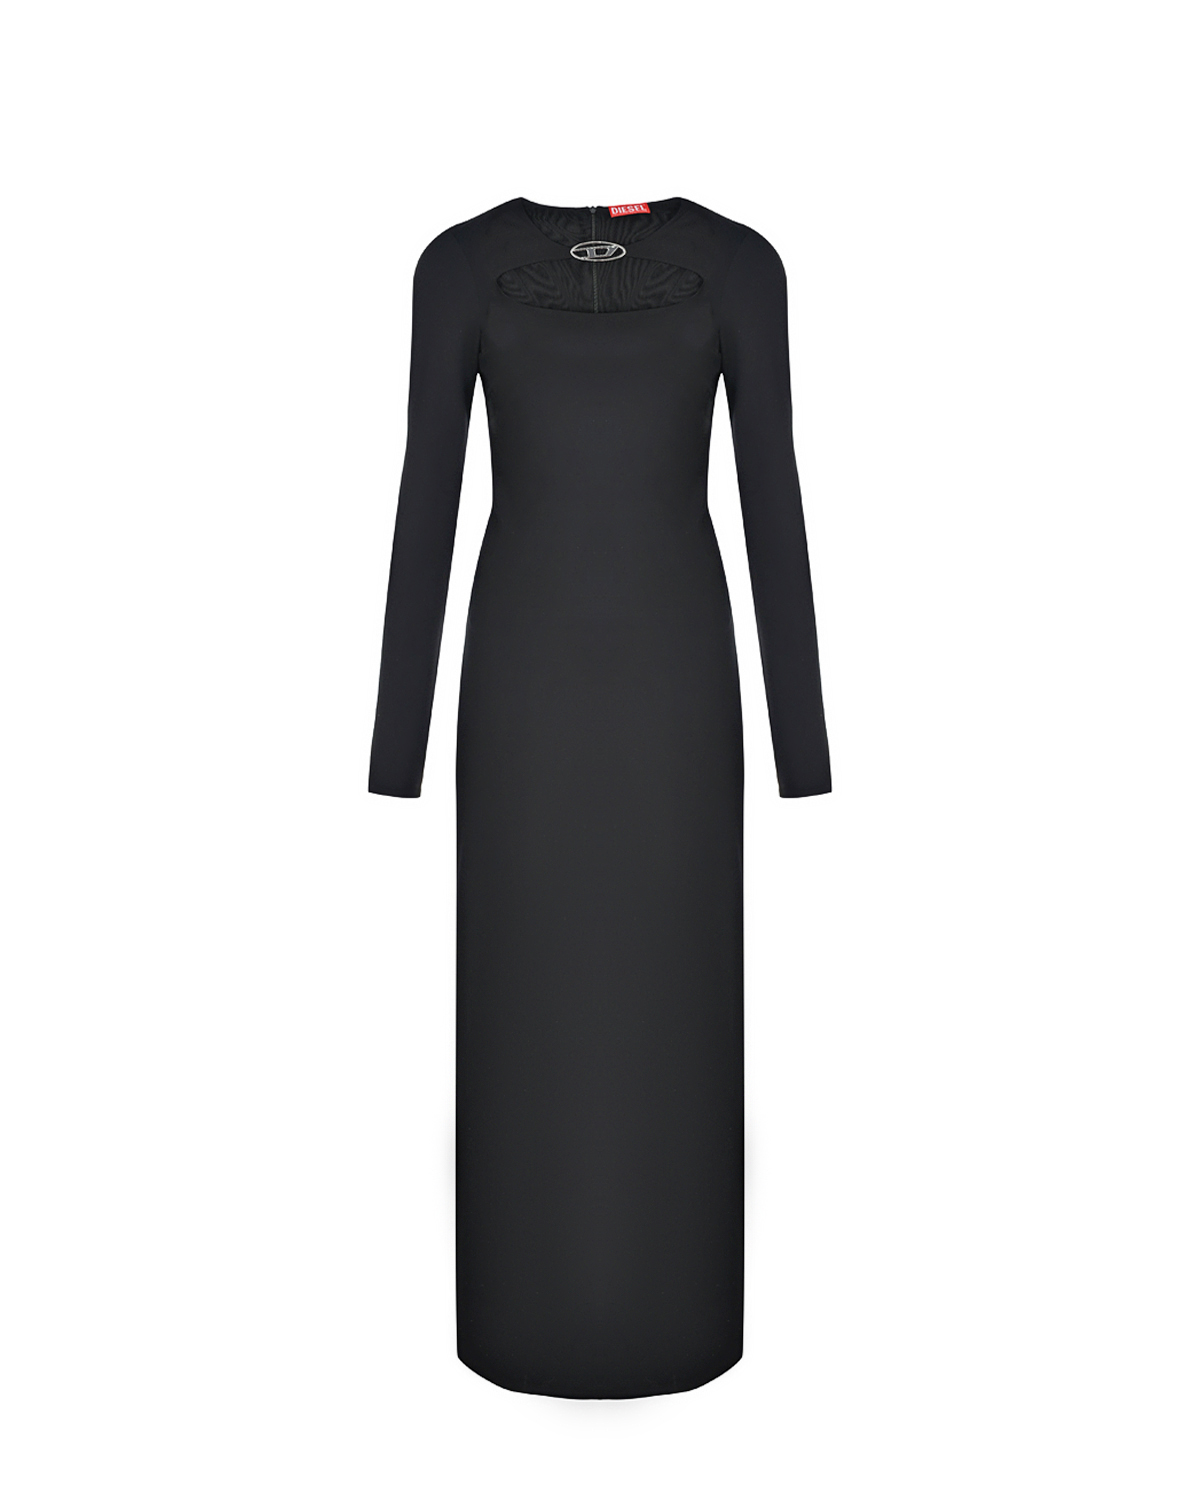 Платье с вырезом на груди Diesel, размер 42, цвет черный - фото 1